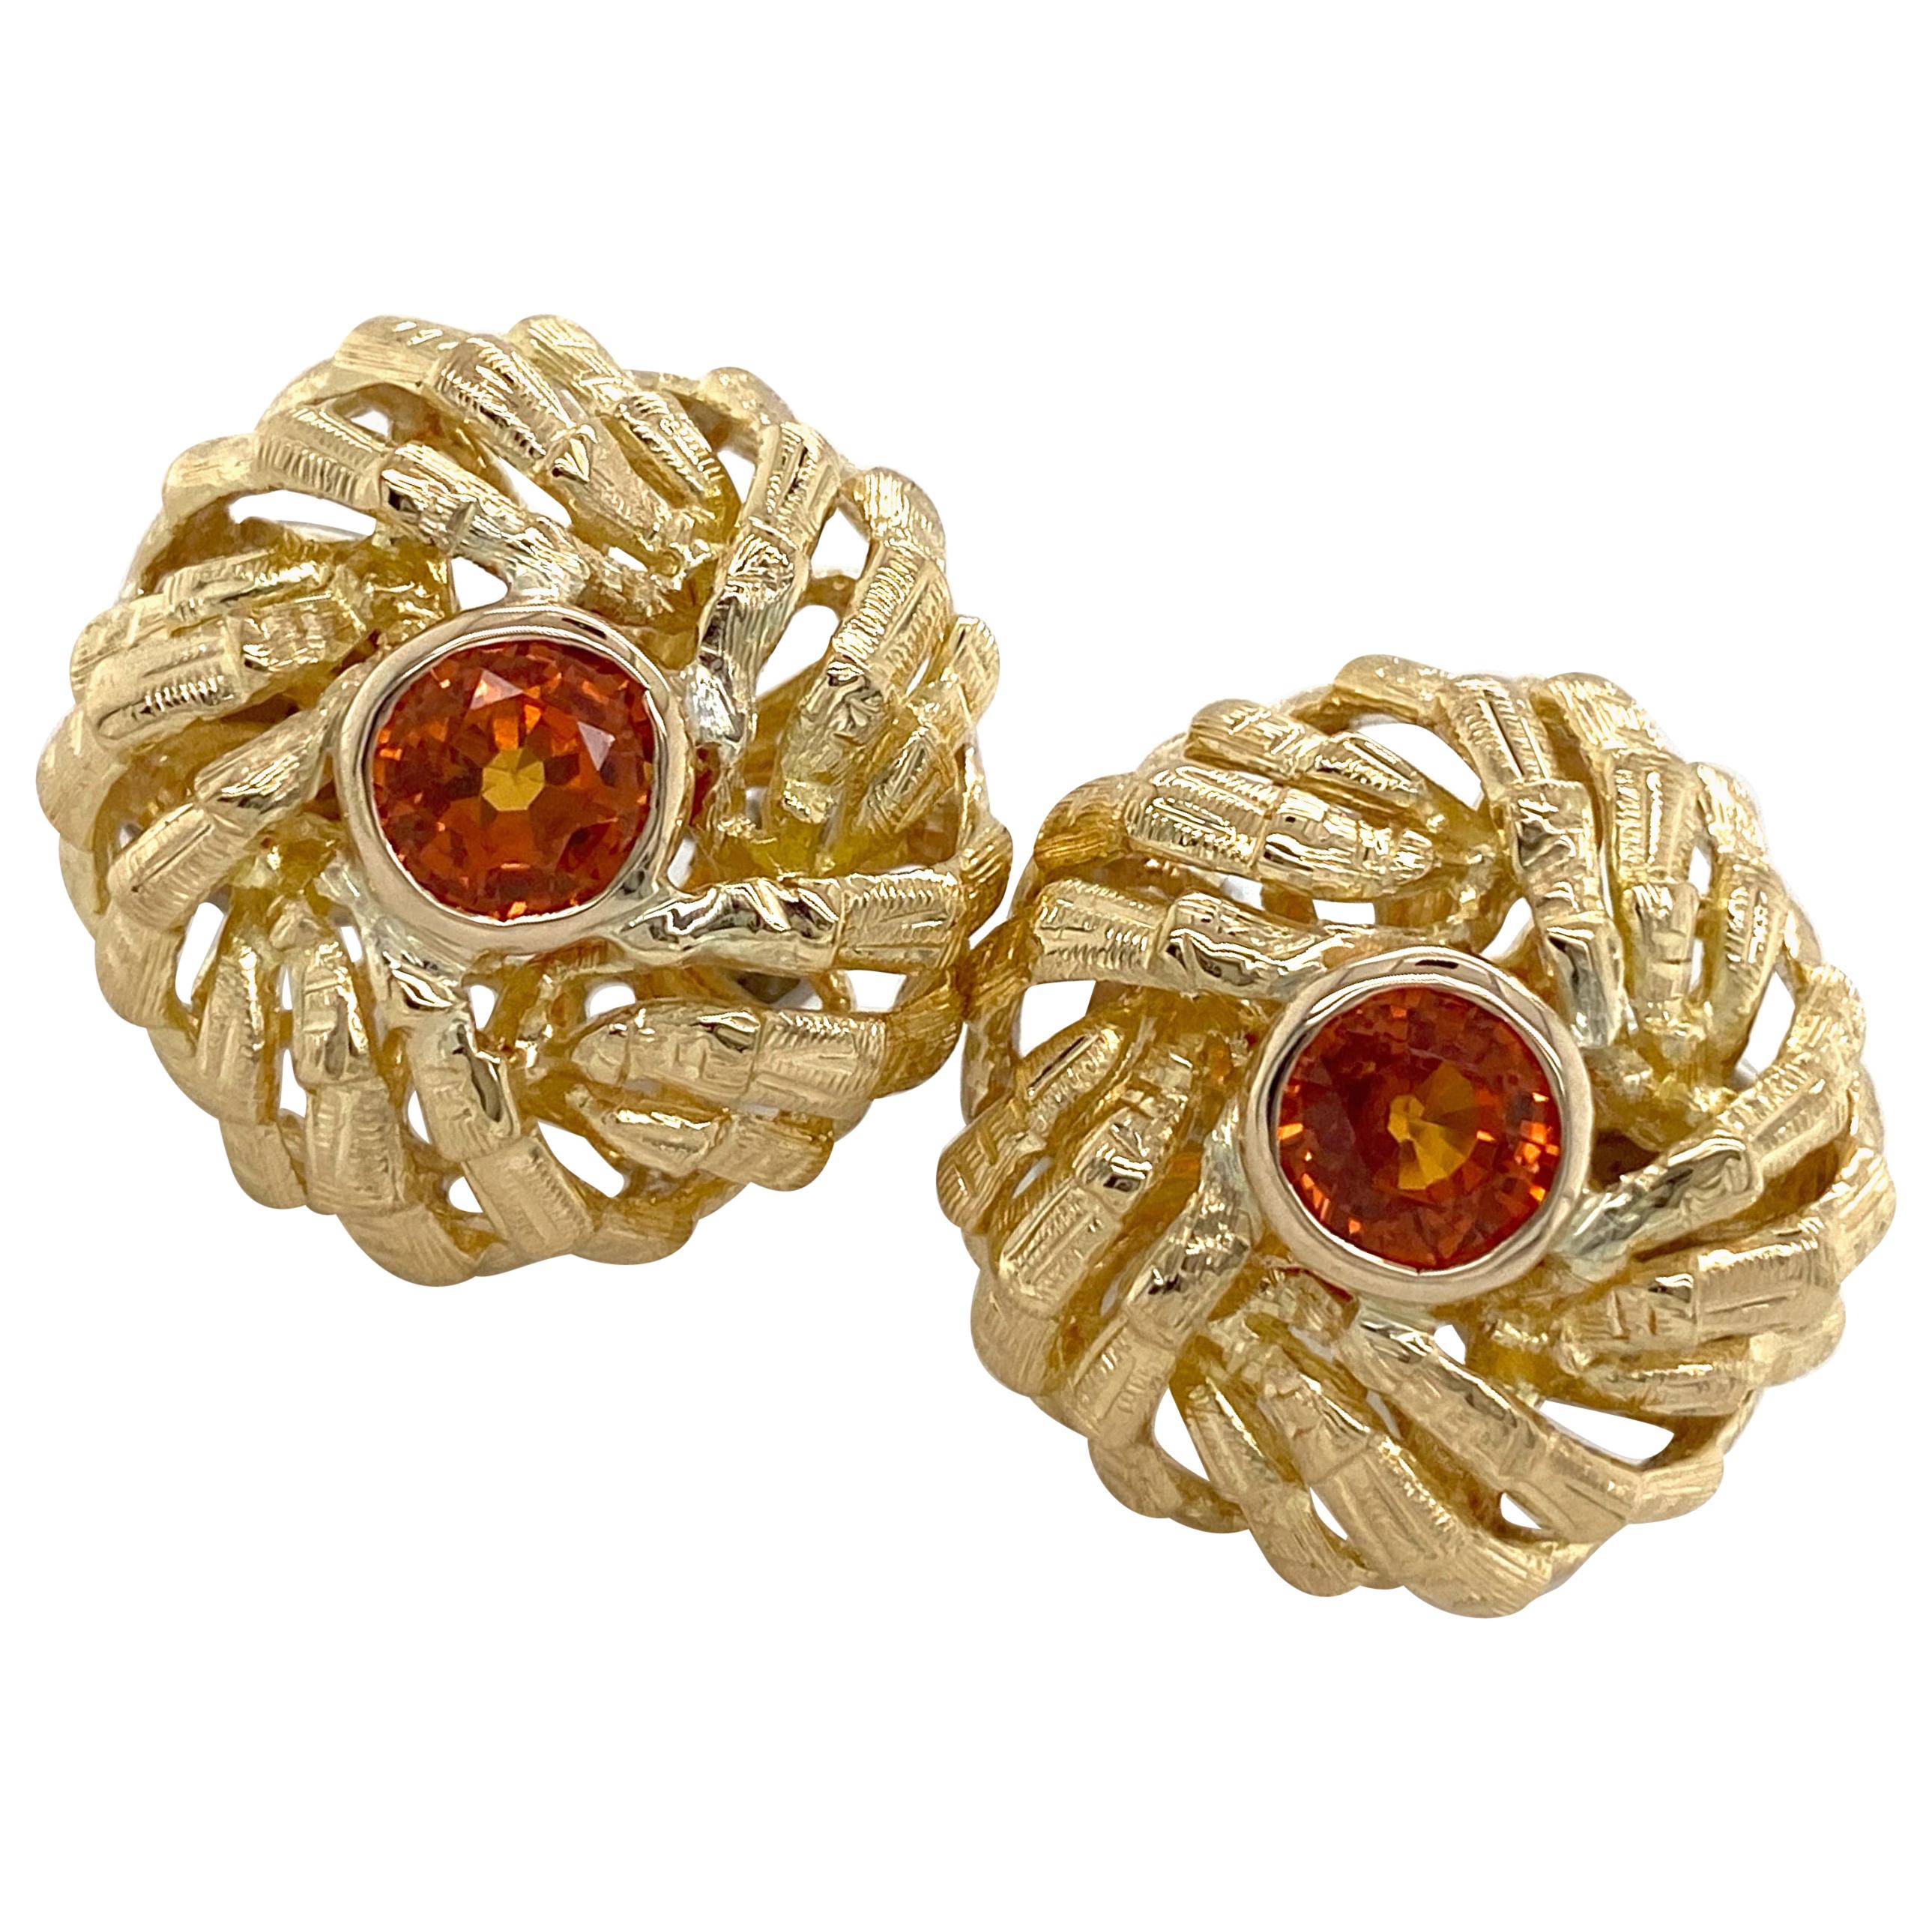 Boucles d'oreilles à levier en or 18 carats avec saphirs orange "Bamboo" datant des années 1960